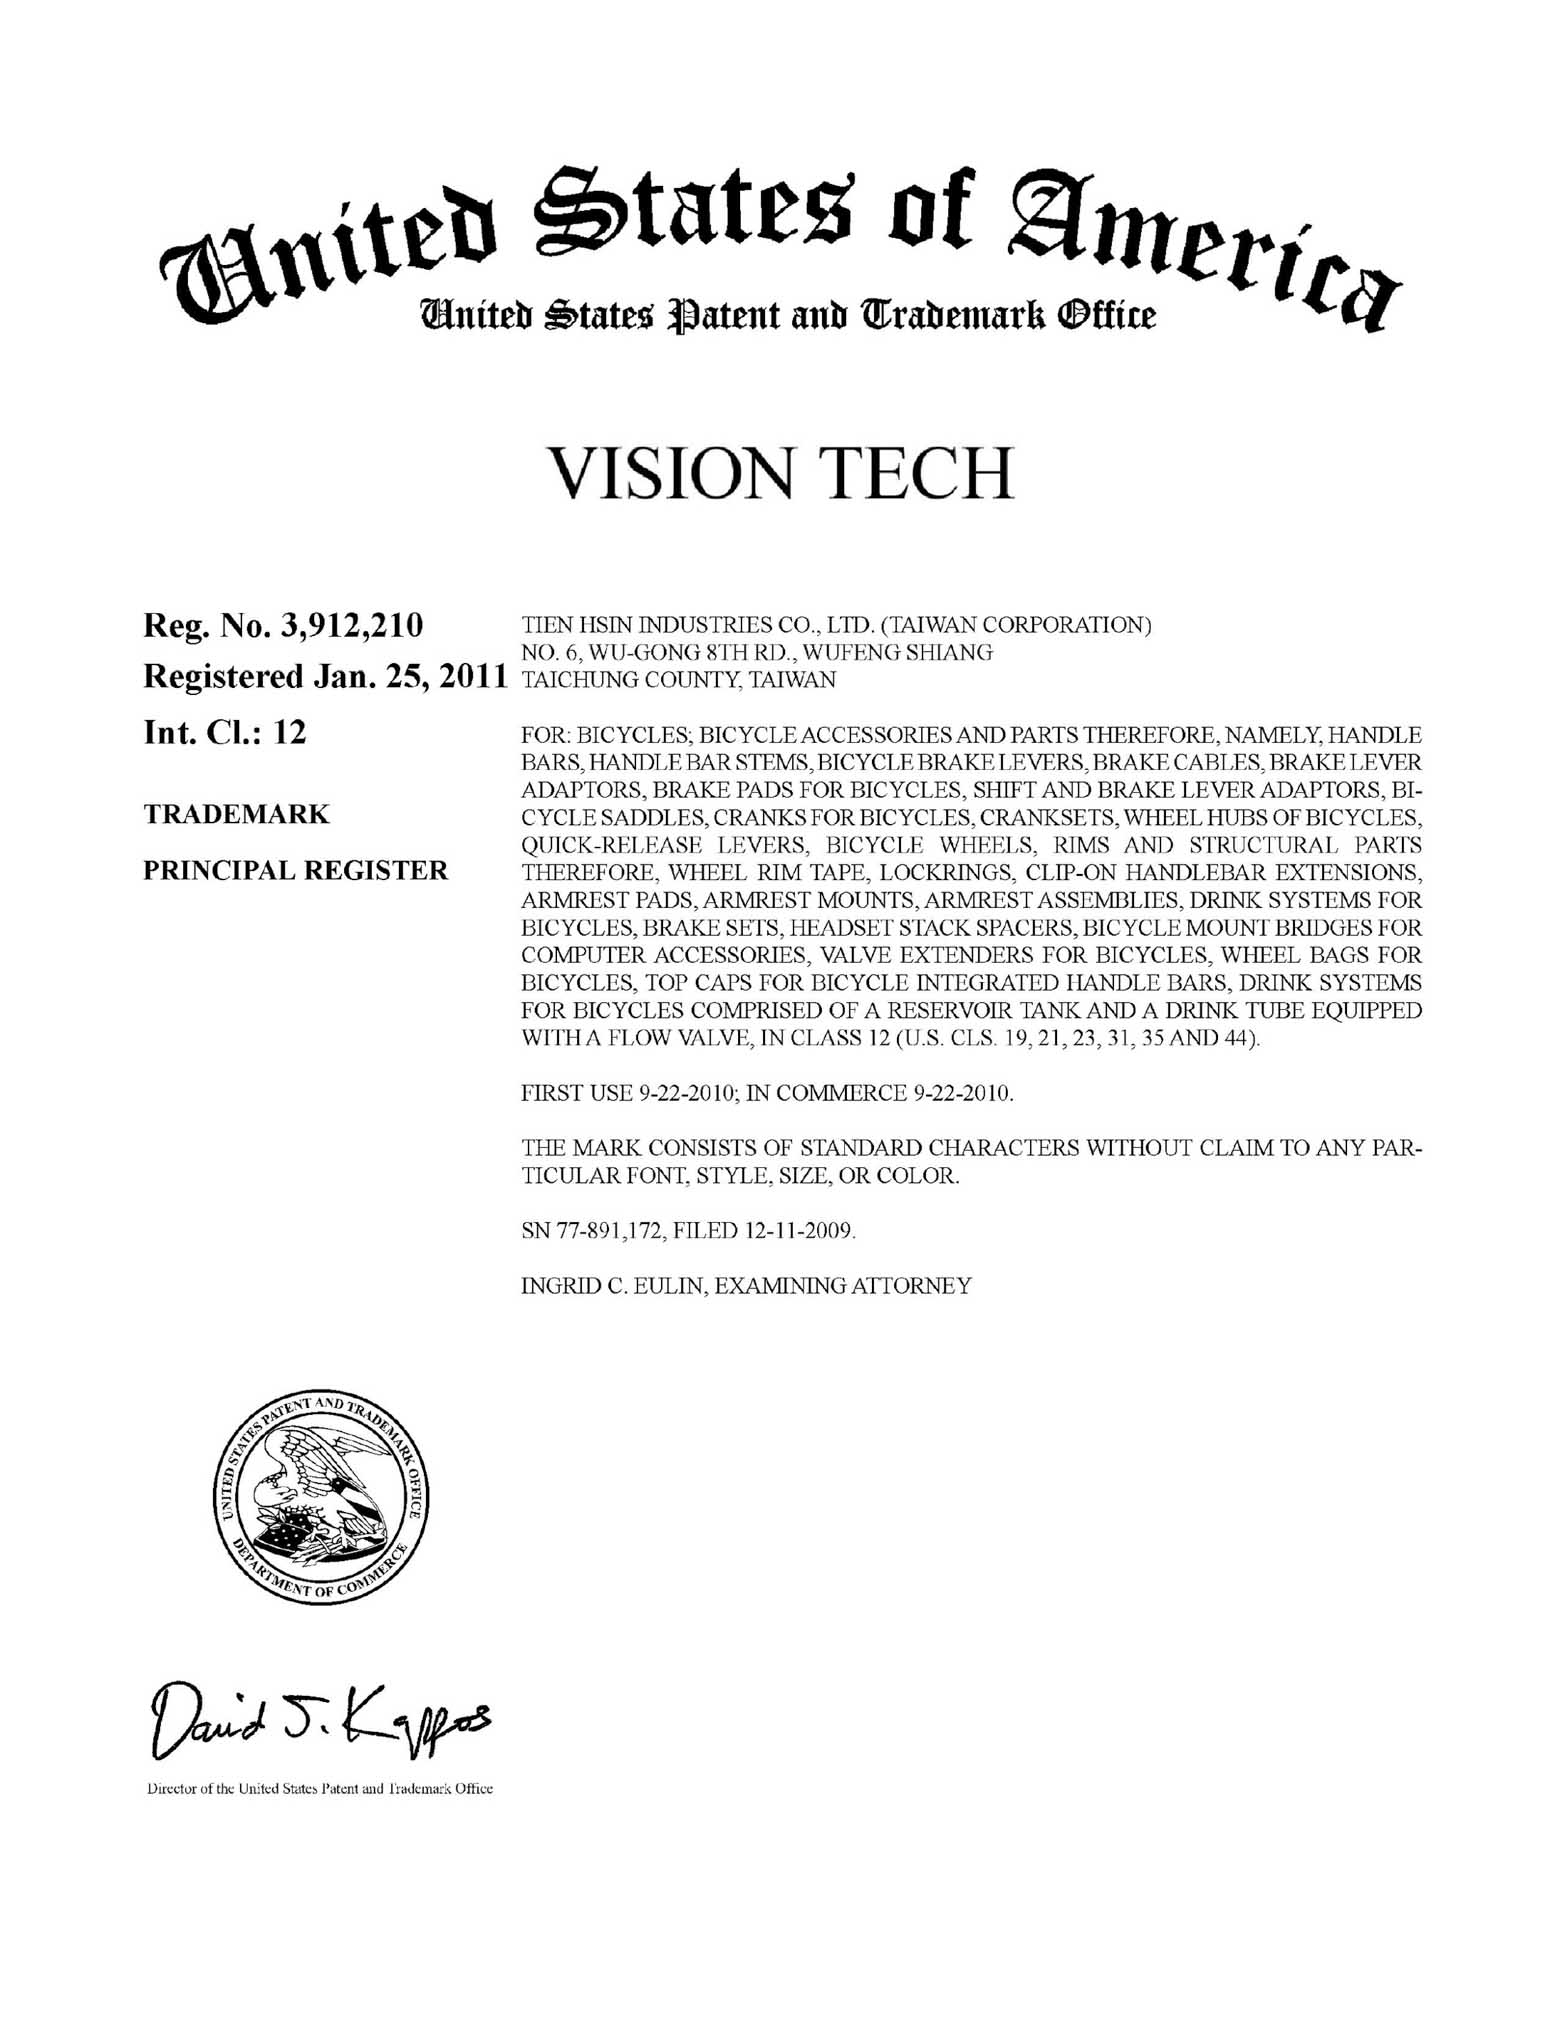 US Trademark 3,912,210 - Vision Tech main image